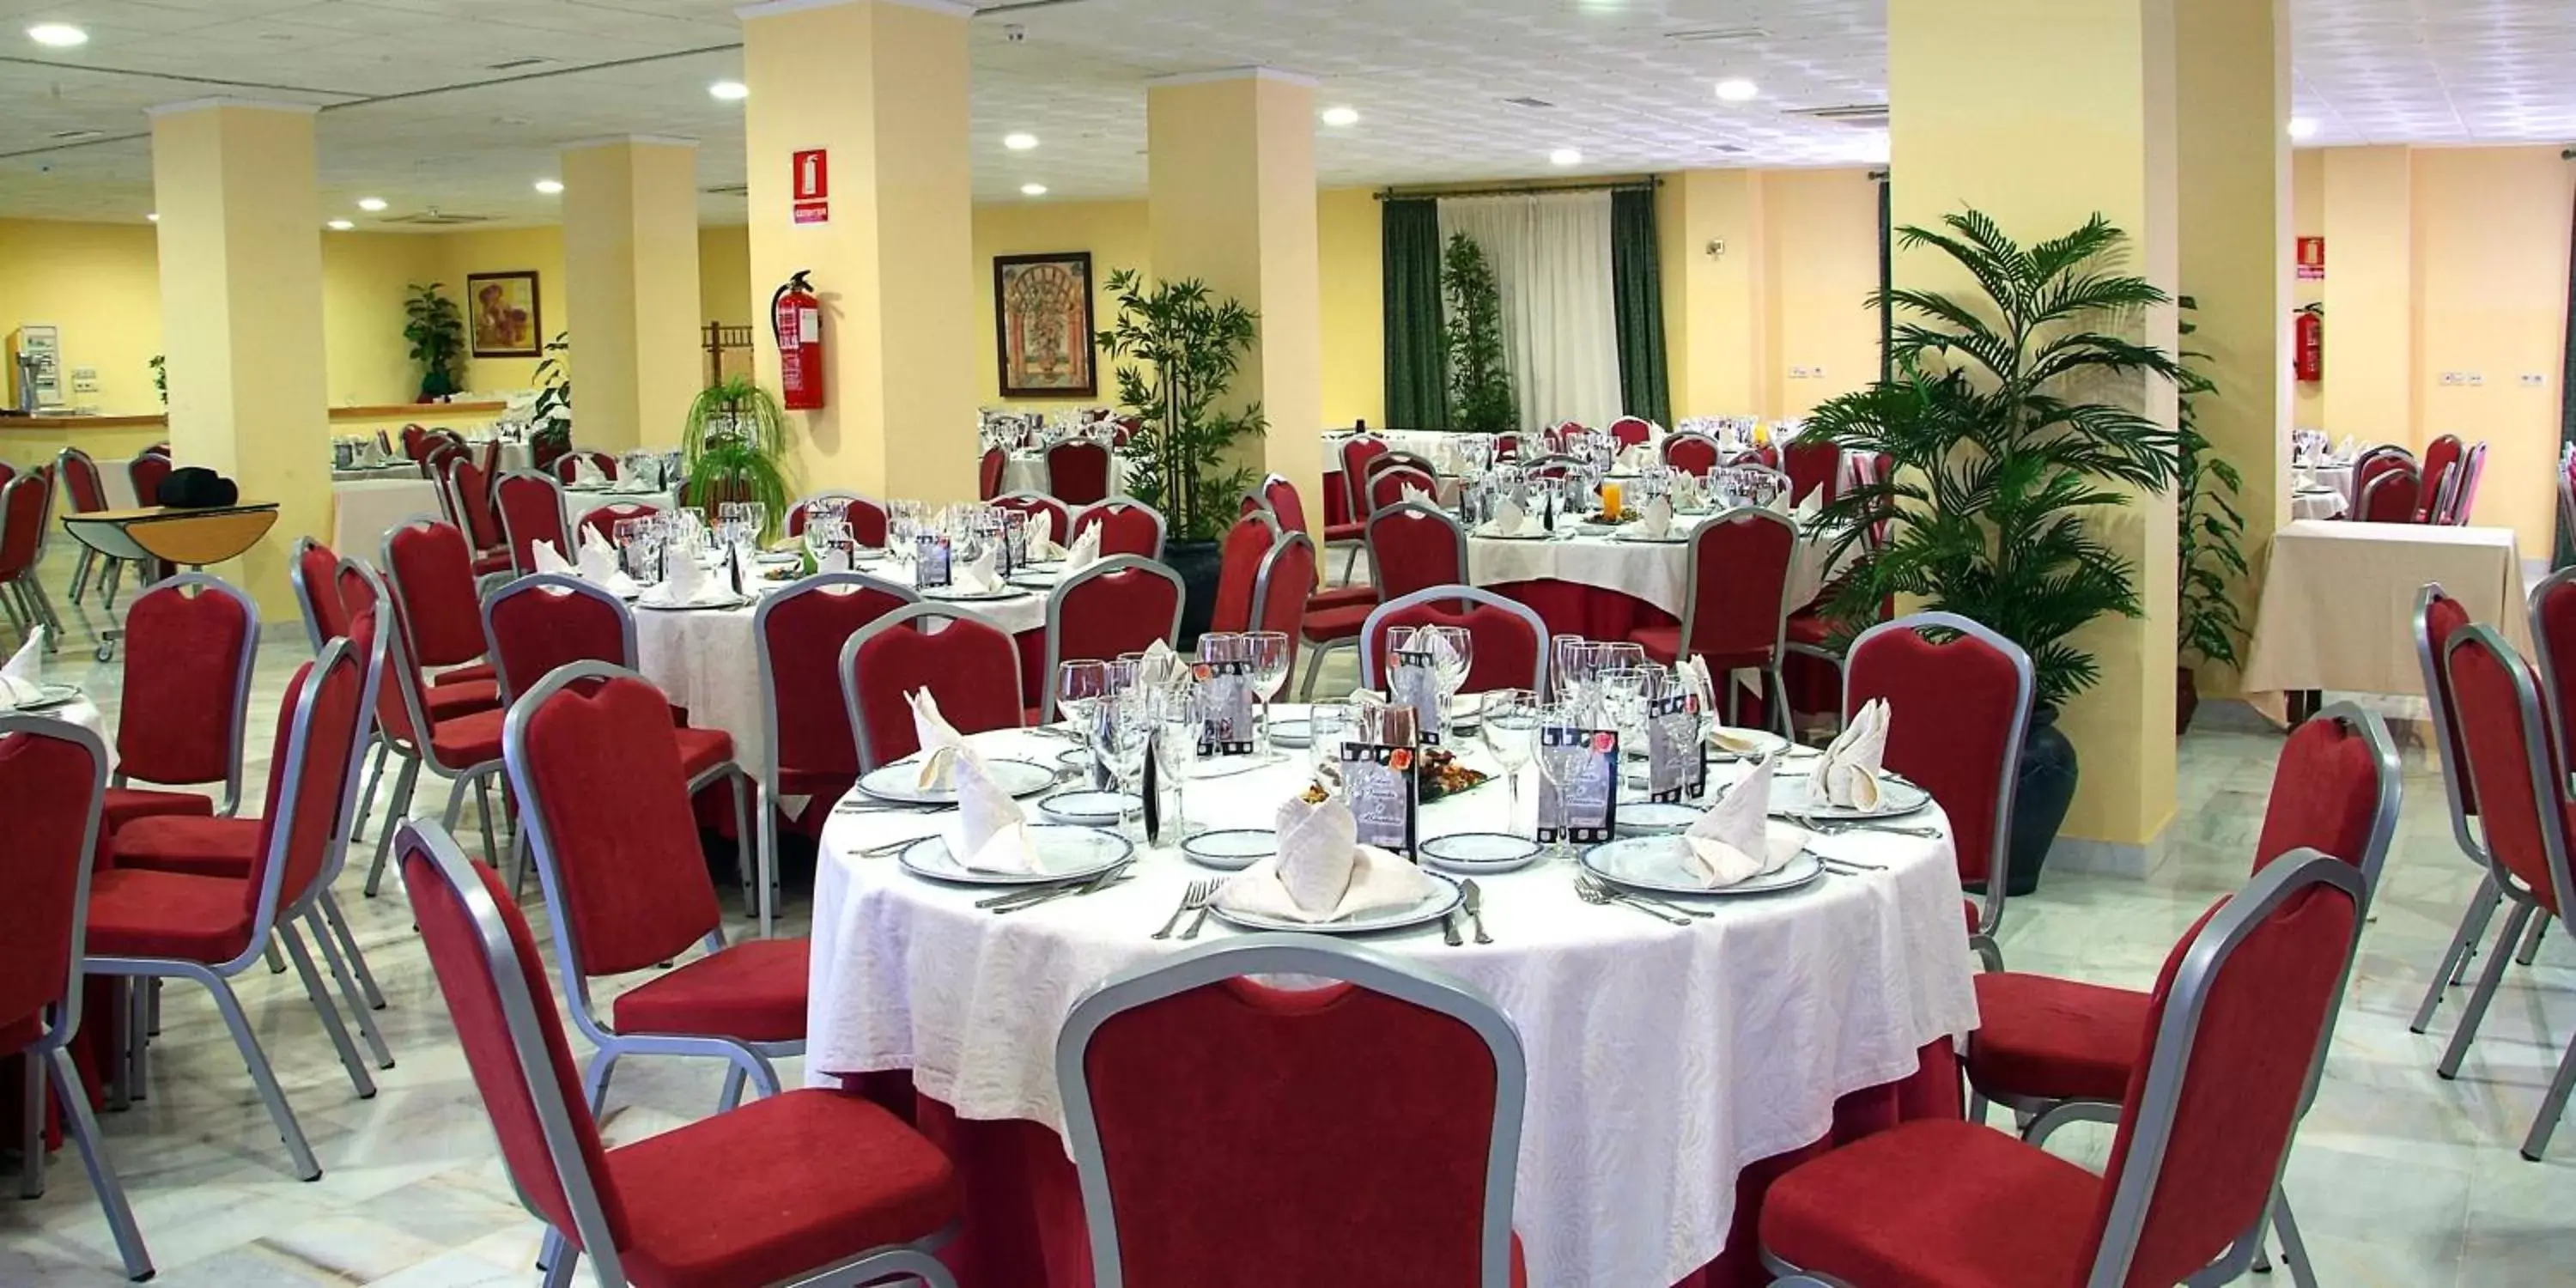 Banquet/Function facilities, Restaurant/Places to Eat in Gran Hotel Ciudad Del Sur